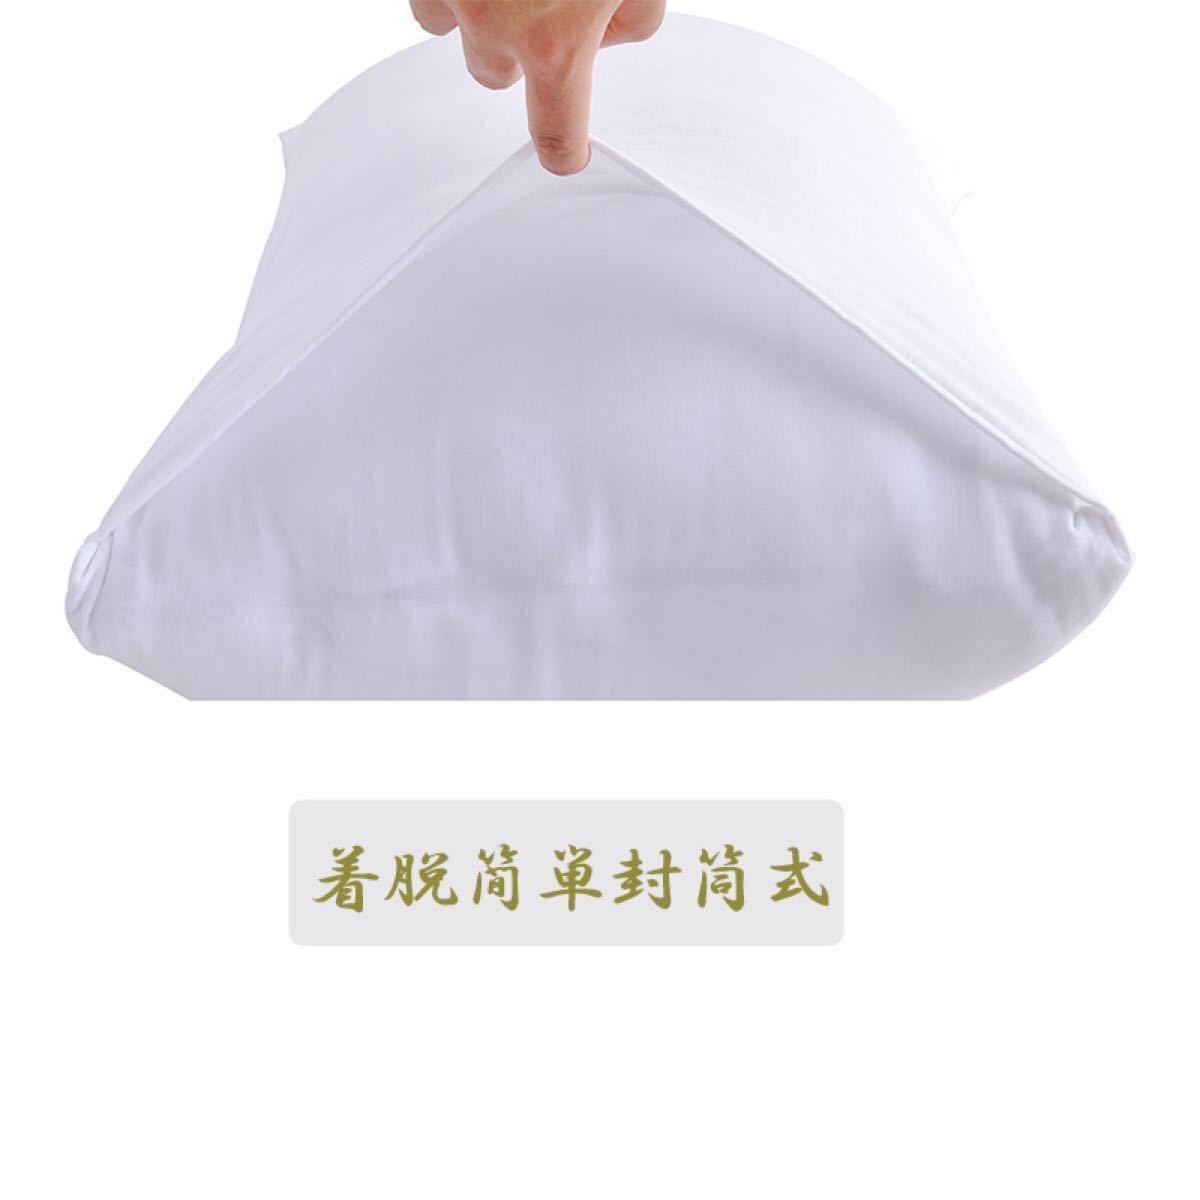 枕カバー43x63 ガーゼ 白 ビローケース 綿100% 3重ガーゼ まくらカバー エジプト超長綿 通気 吸湿 夏涼冬暖 柔らか